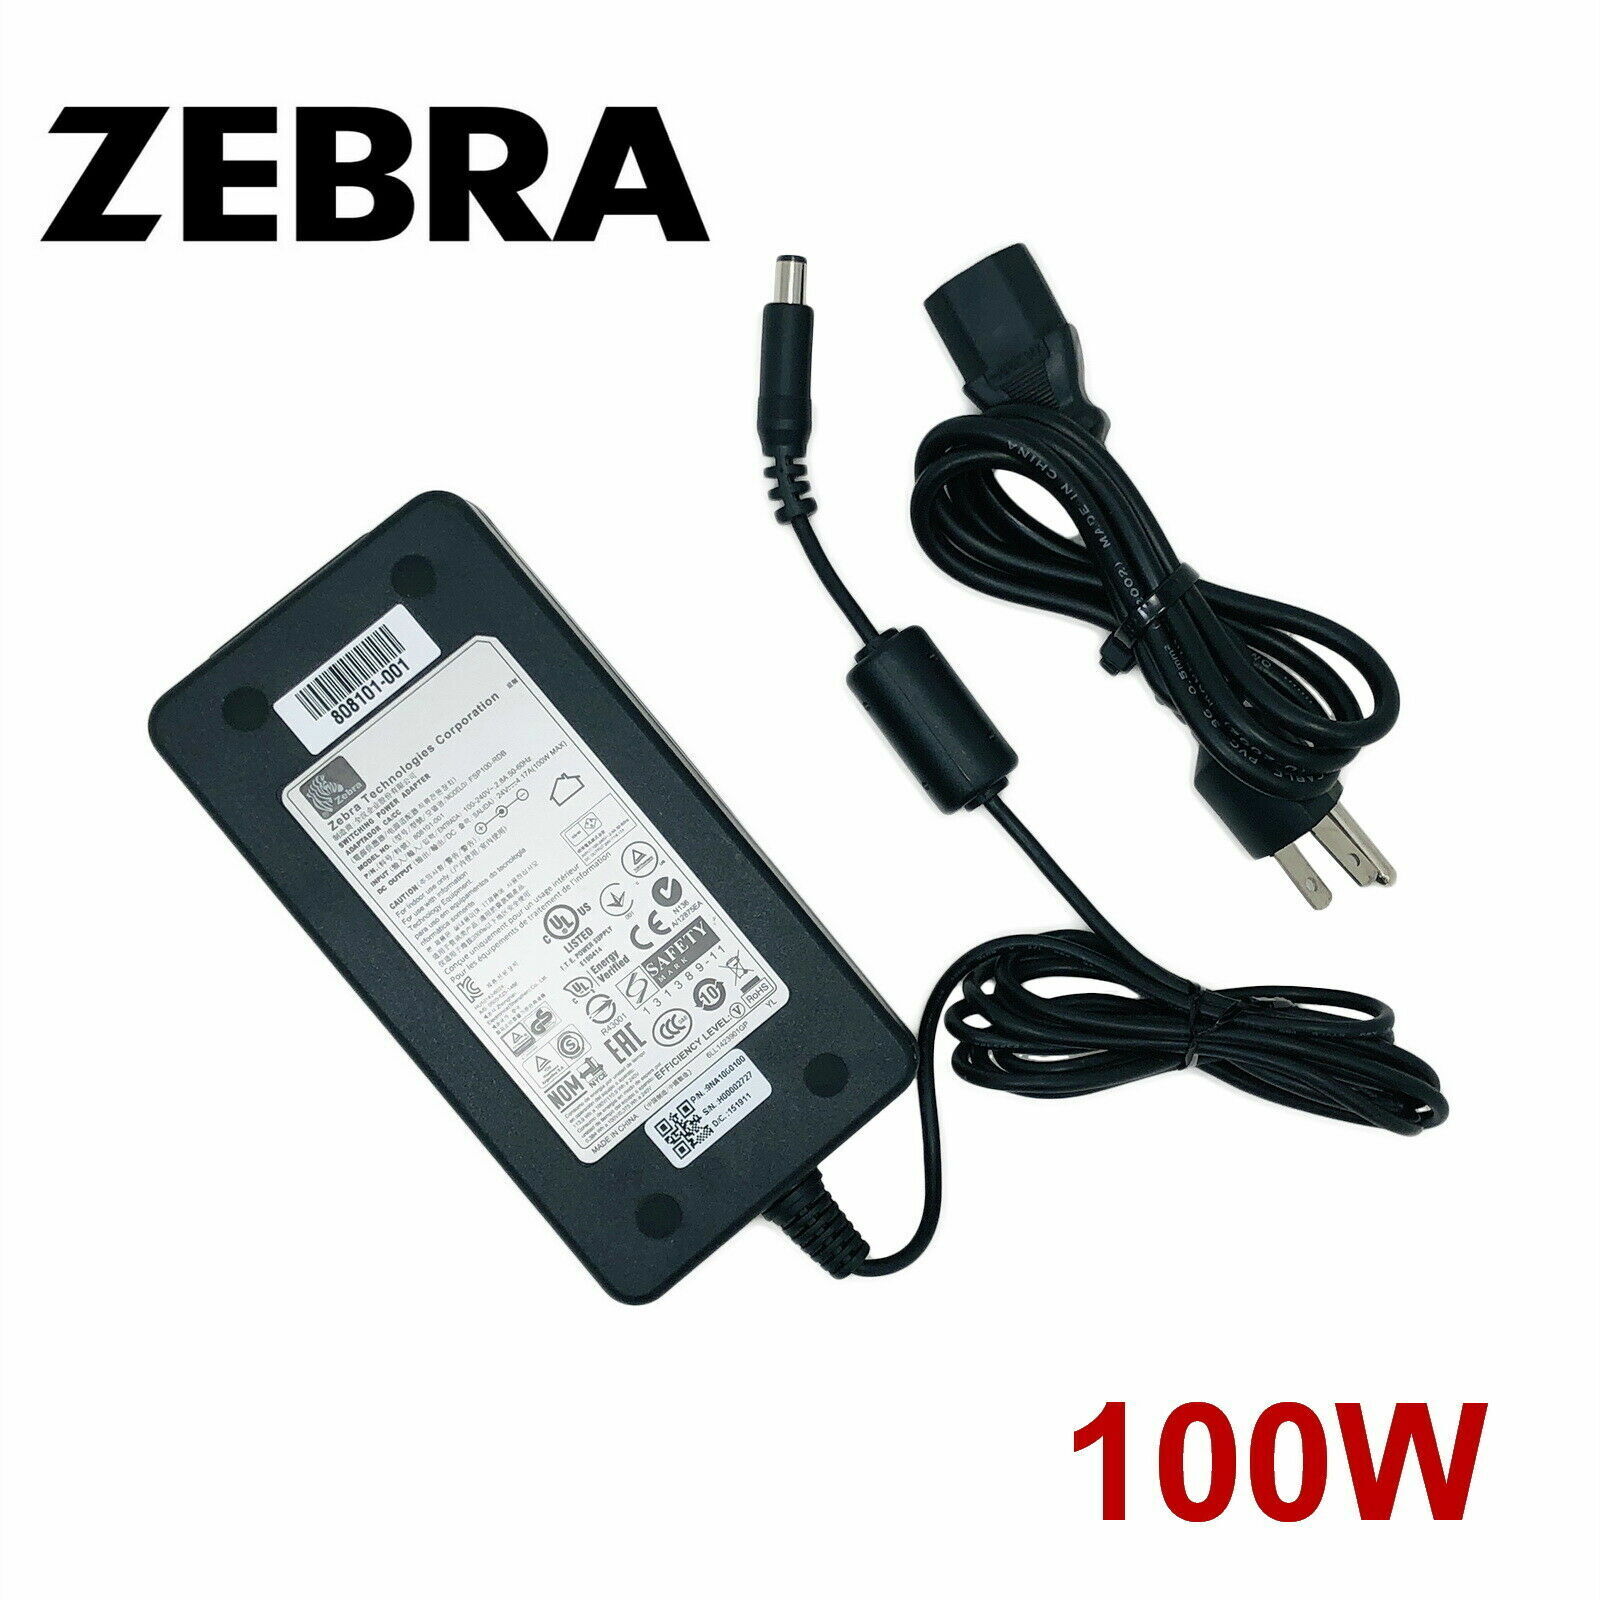 *Brand NEW*Original Zebra 100W 24V 4.17A AC Adapter For 808101-001 FSP100-RDB Power Supply